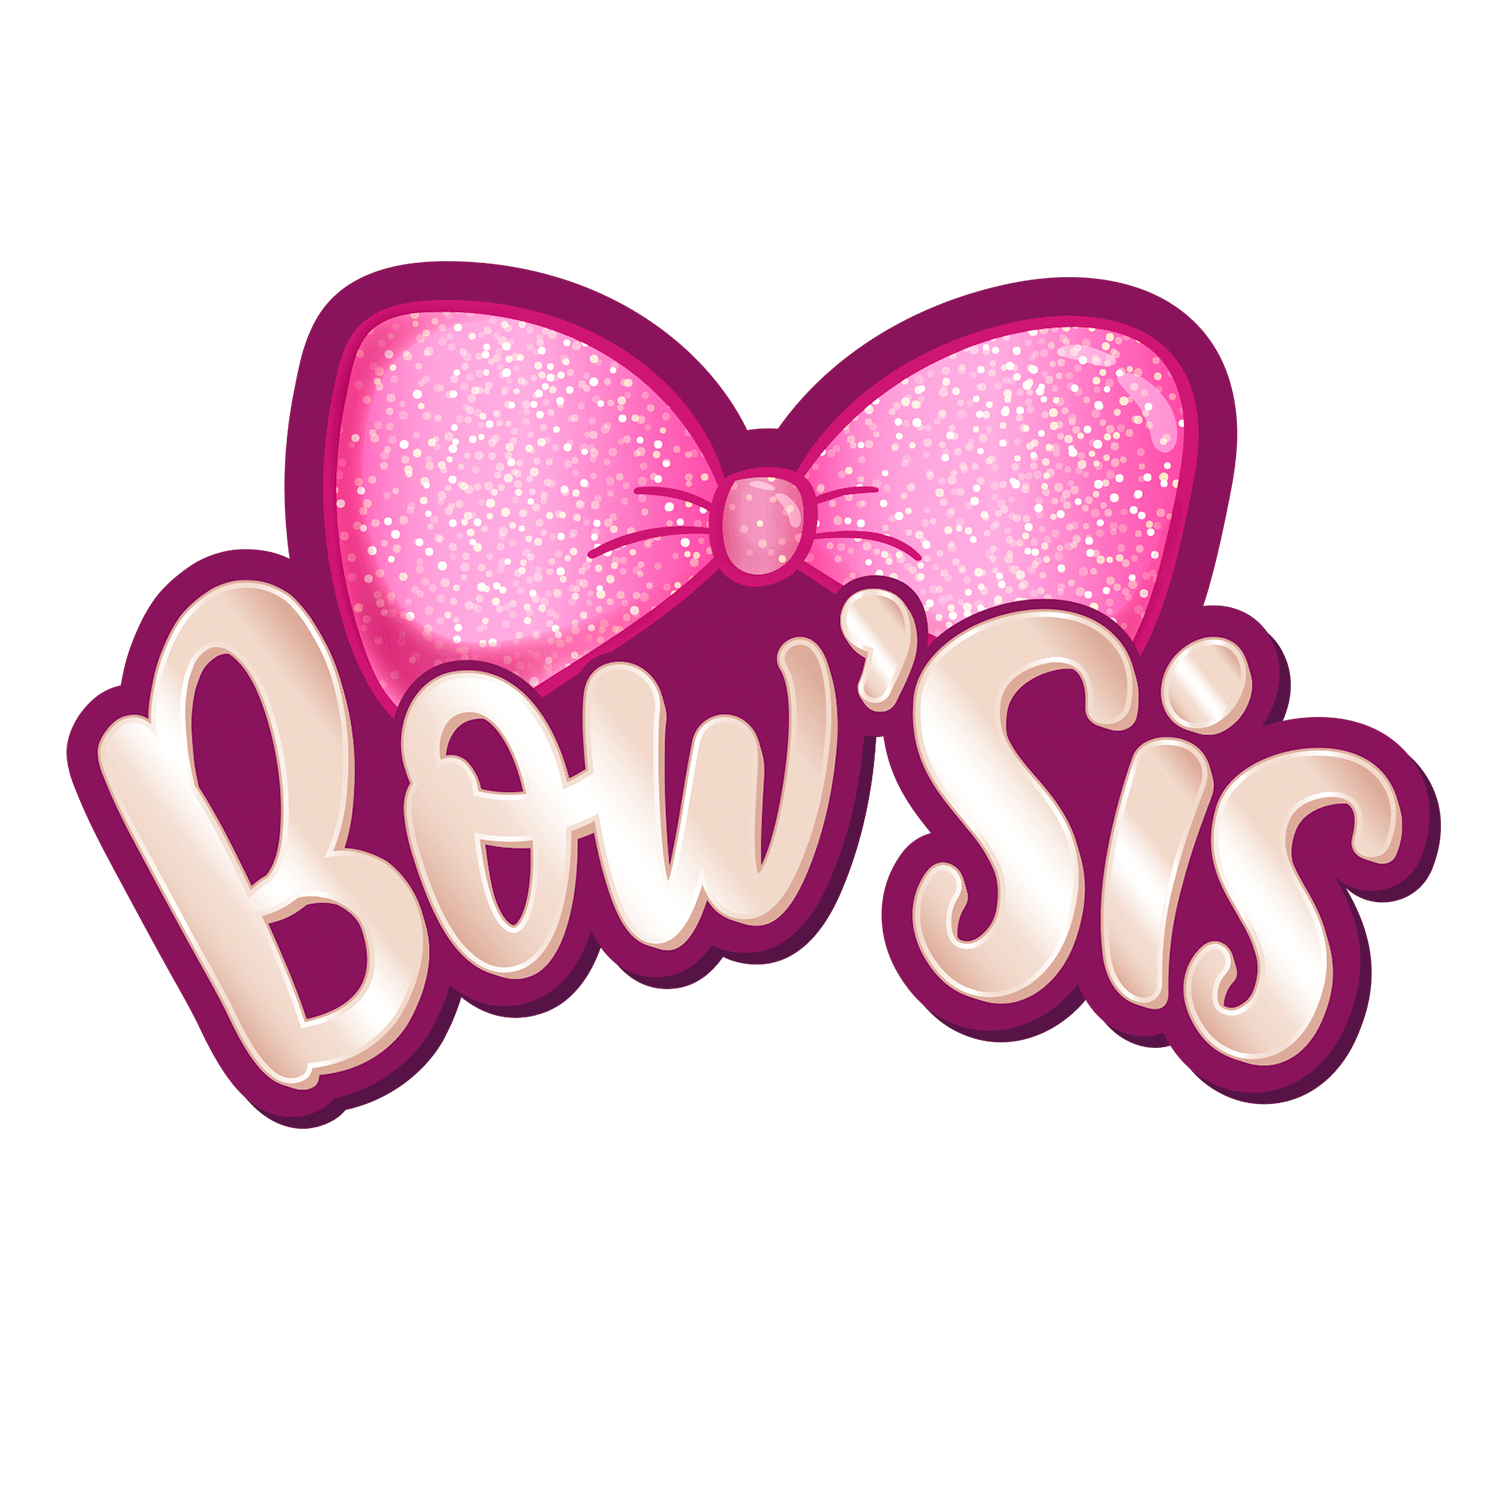 Bowsis